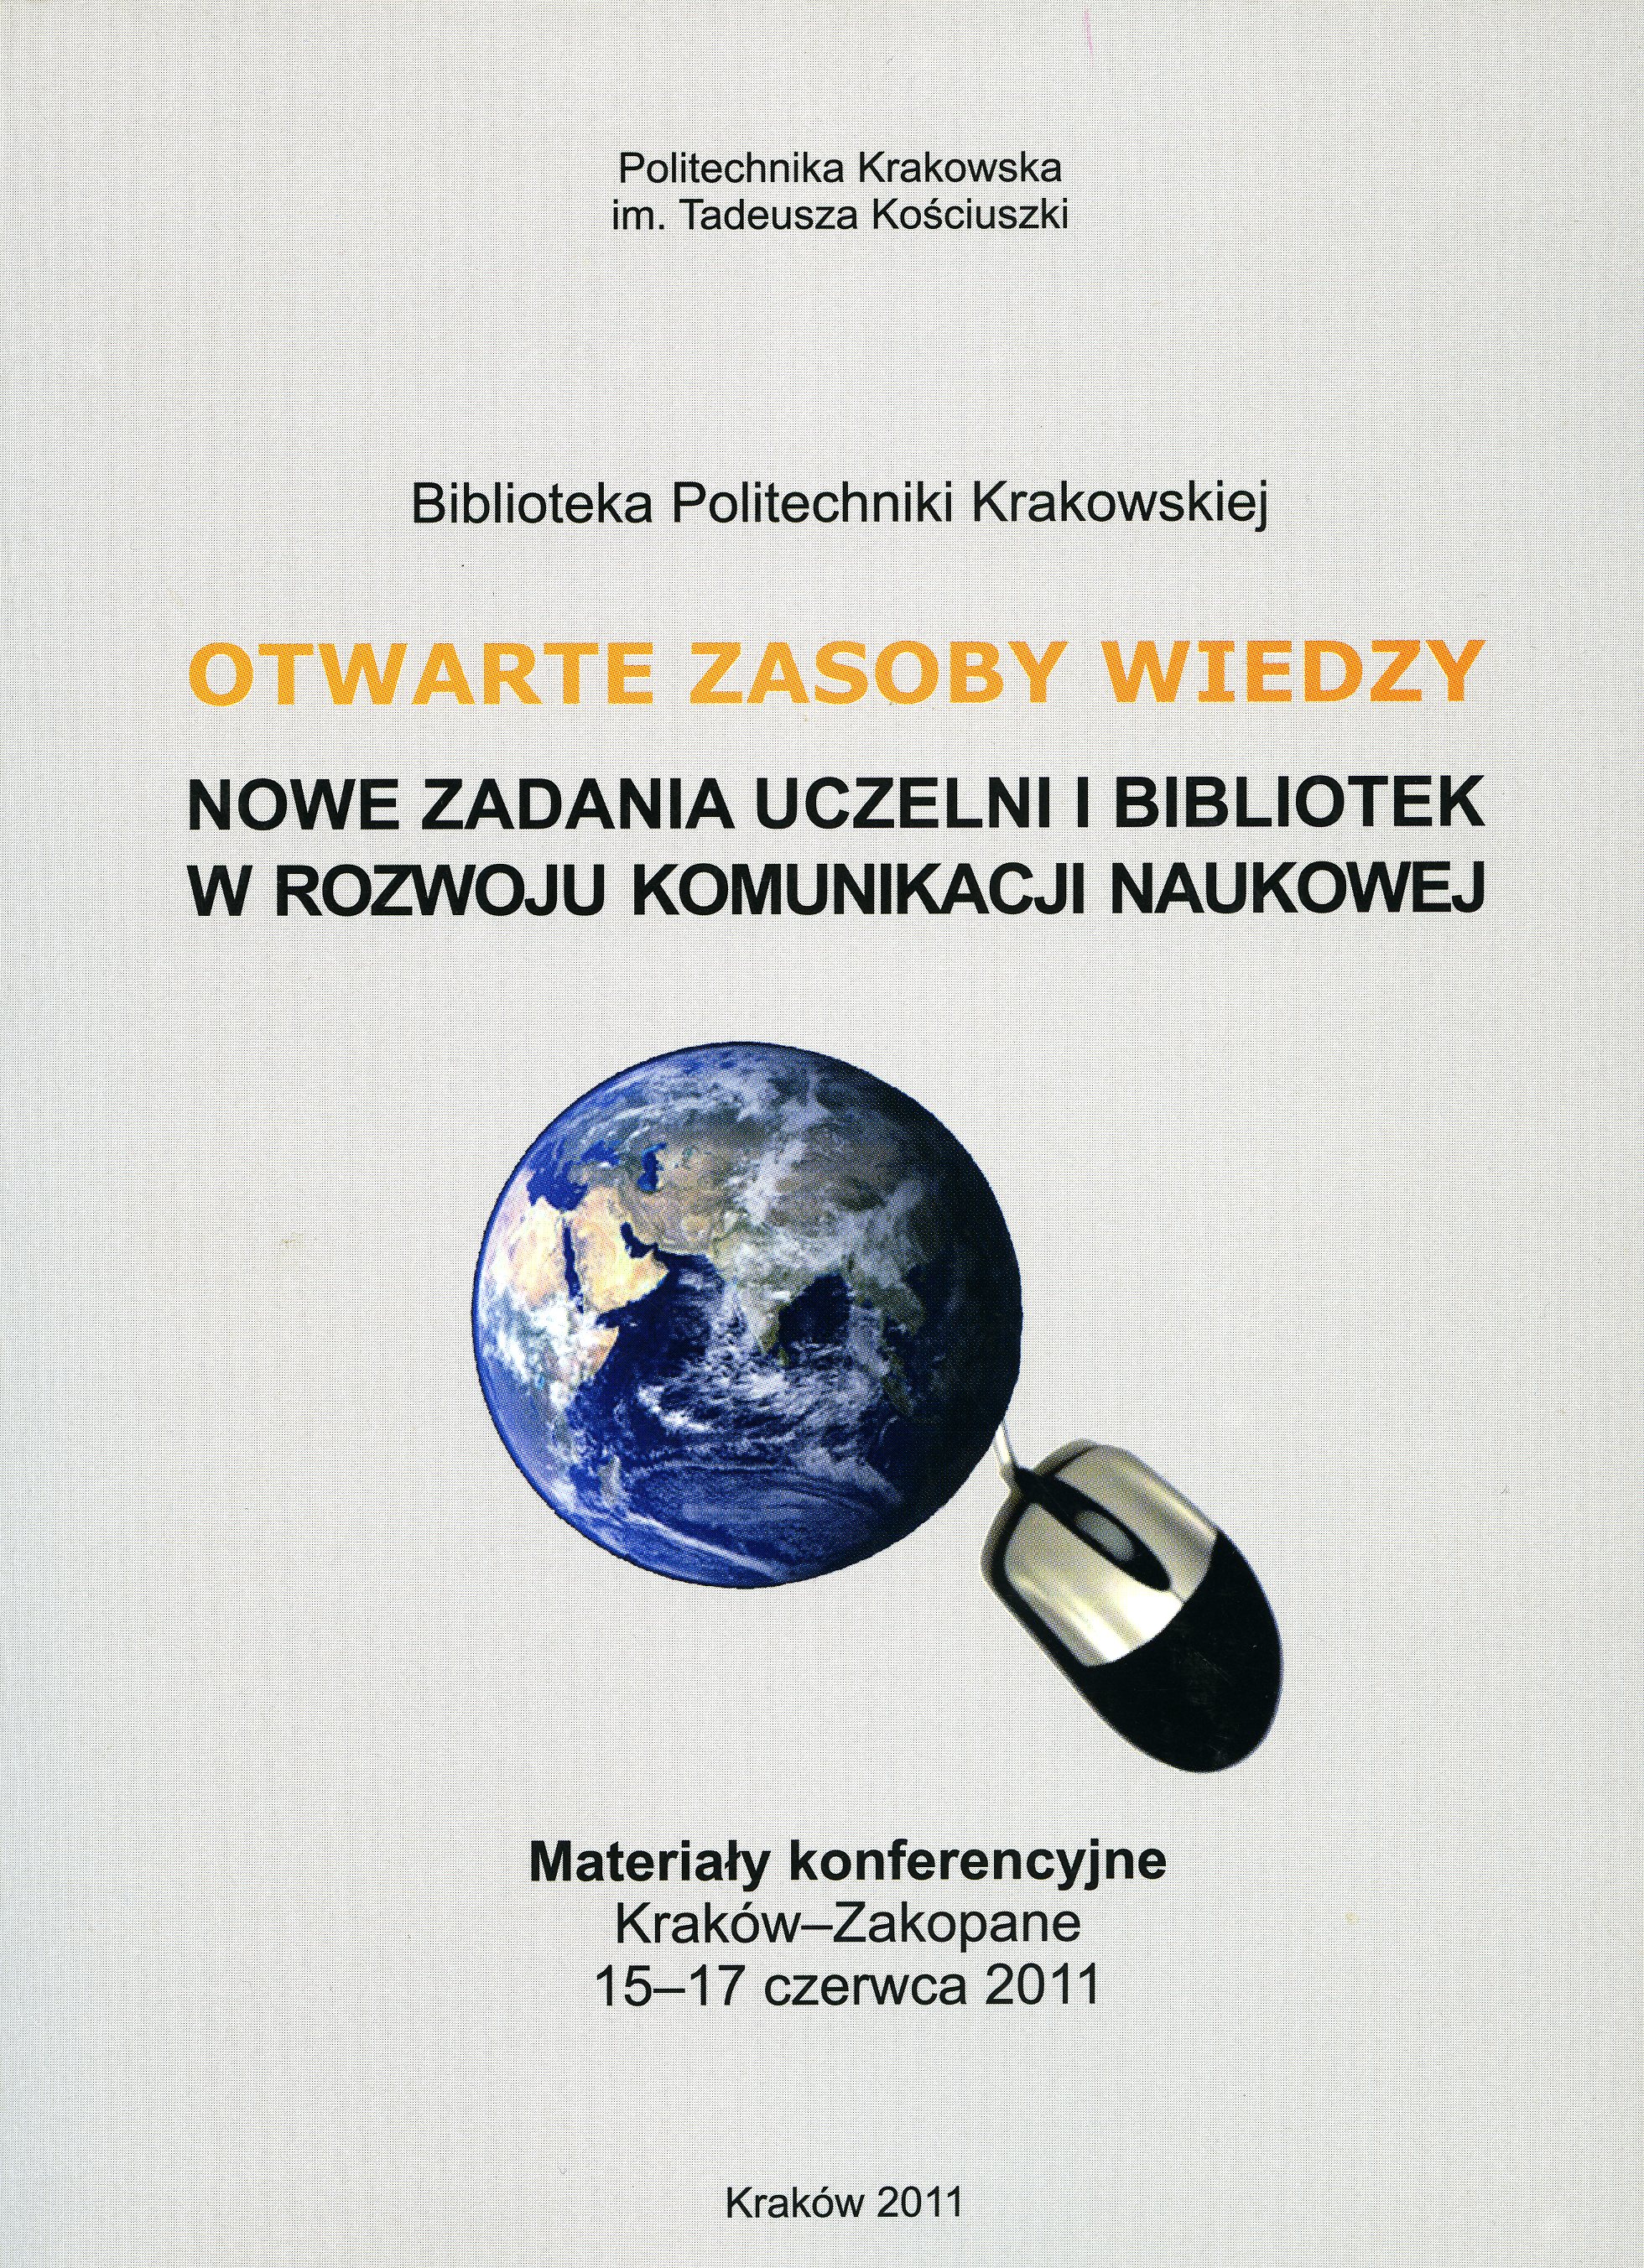 Otwarte zasoby wiedzy. Nowe zadania uczelni i bibliotek w rozwoju komunikacji naukowej, Kraków-Zakopane 15-17.06.2011